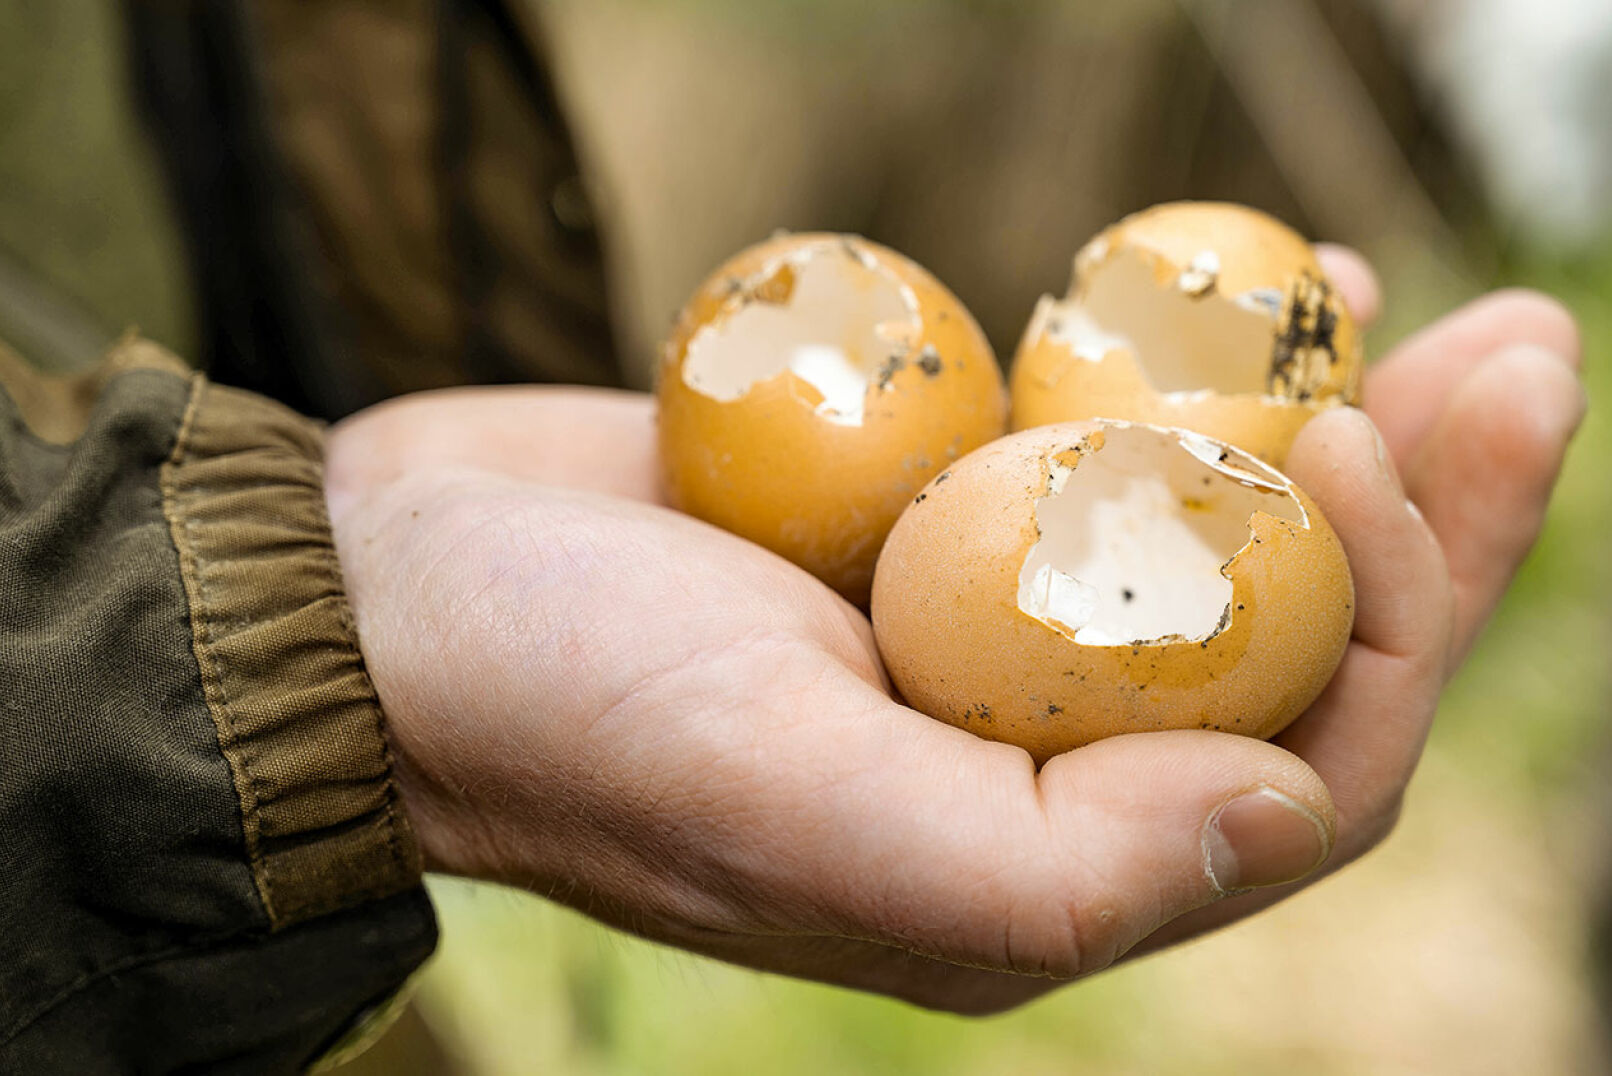 Die aufgefundenen Eierschalen weisen unterschiedliche Fraßspuren auf. - Die aufgefundenen Eierschalen weisen unterschiedliche Fraßspuren auf. - © Barbara Marko